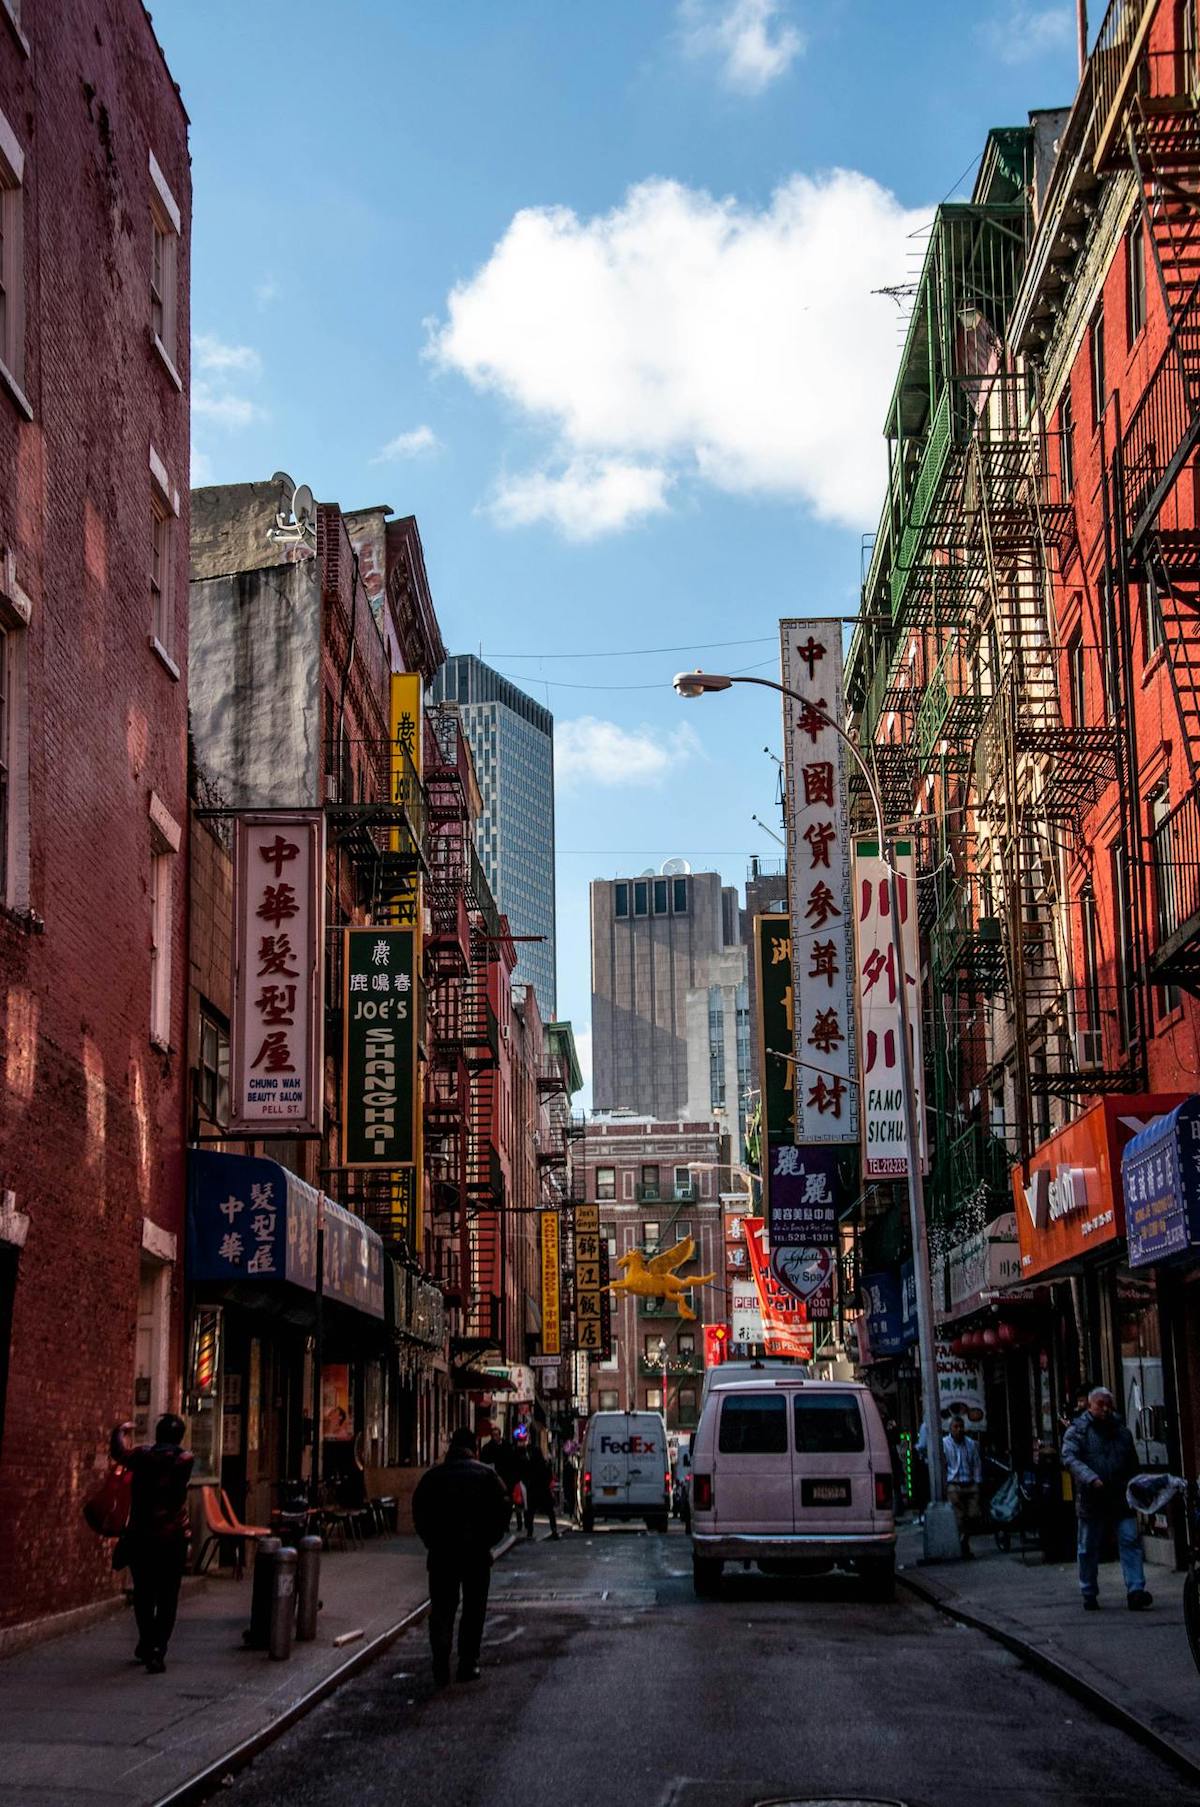 Chinatown NYC street during daytime